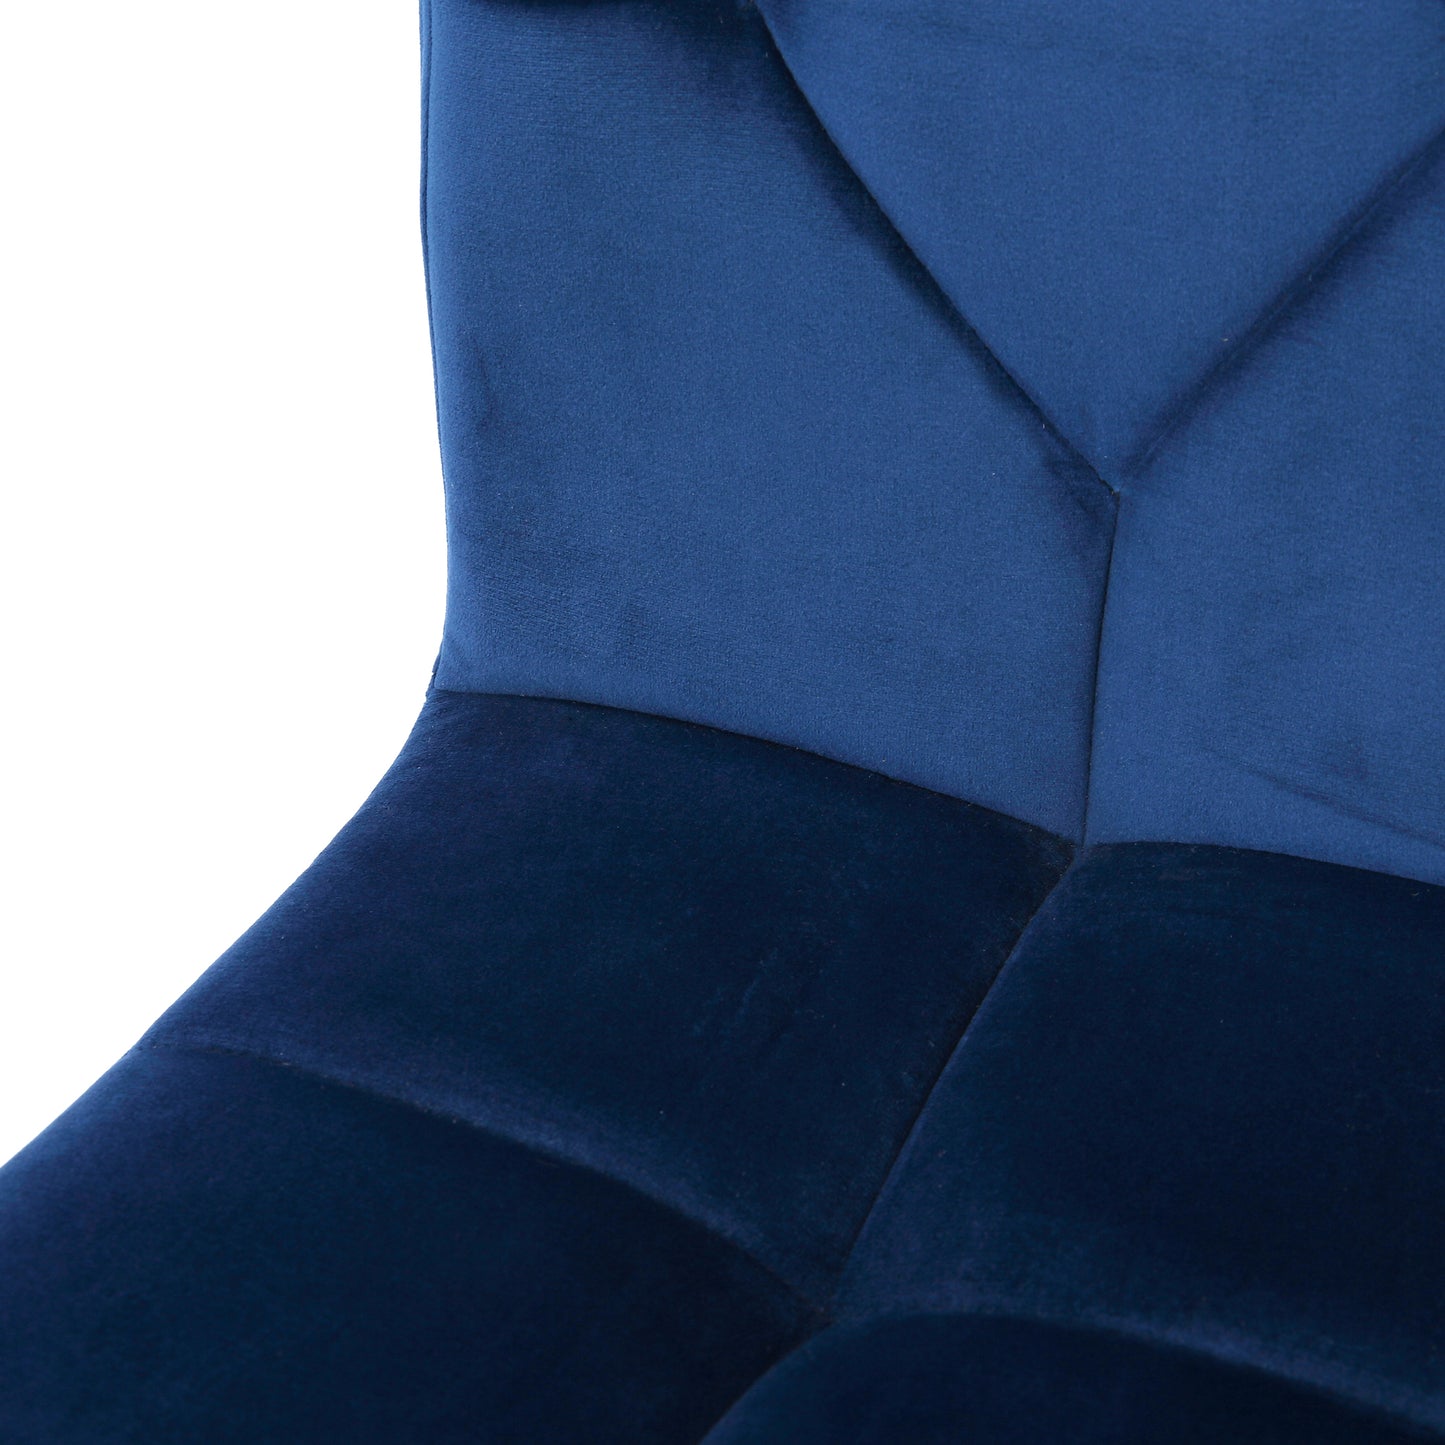 Amali Blue Velvet Upholstered Adjustable Height Swivel Office Chair with Wheel Base